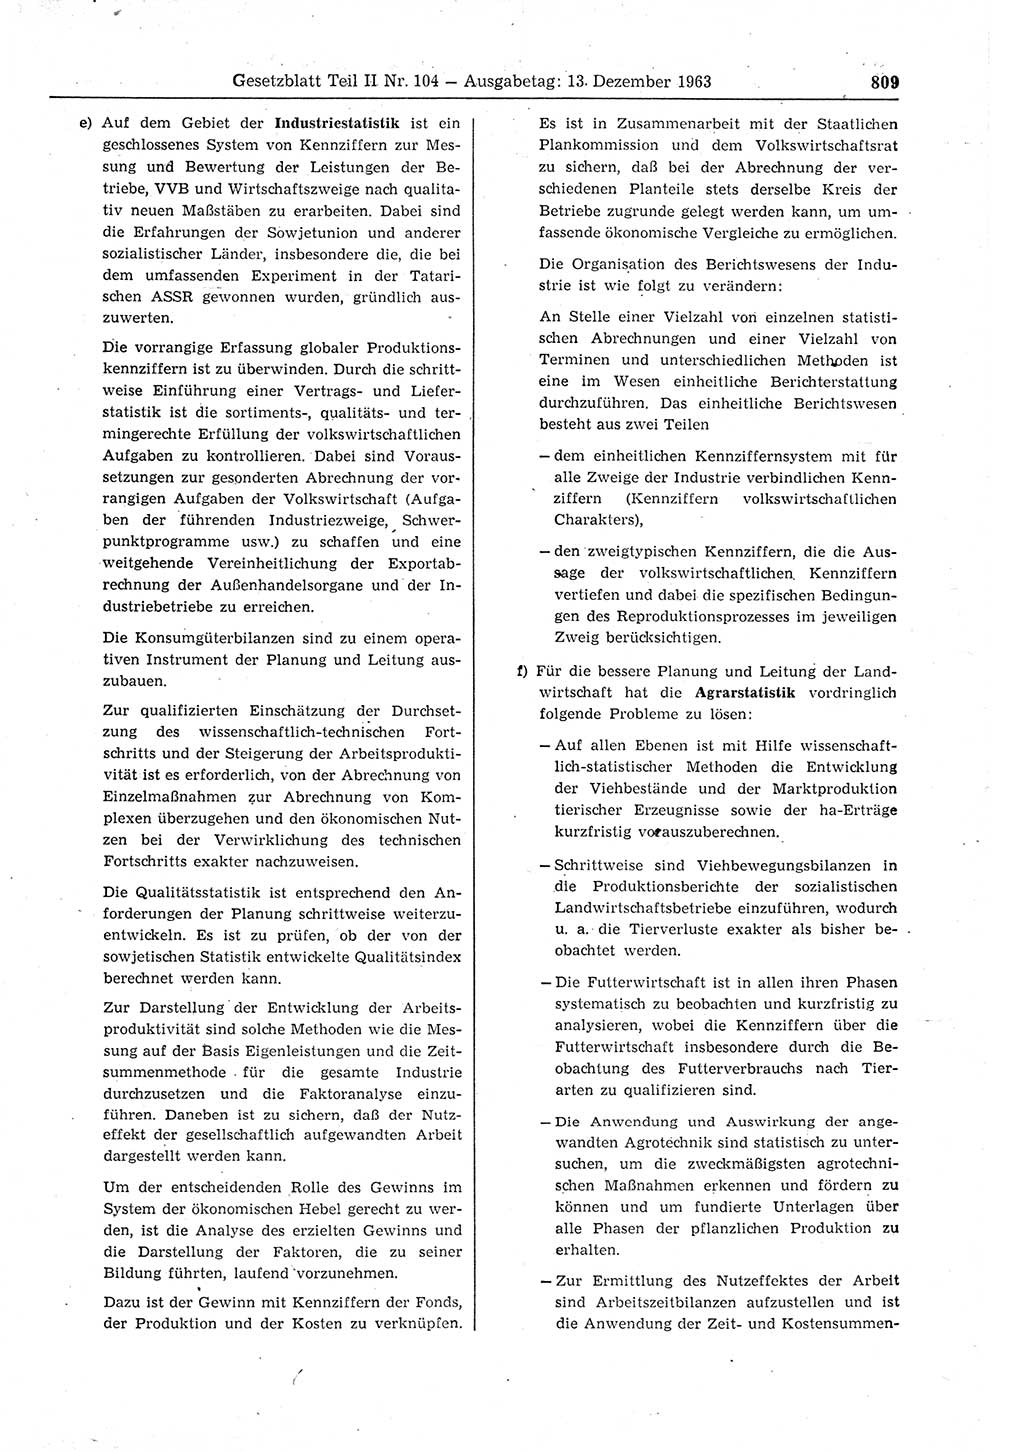 Gesetzblatt (GBl.) der Deutschen Demokratischen Republik (DDR) Teil ⅠⅠ 1963, Seite 809 (GBl. DDR ⅠⅠ 1963, S. 809)